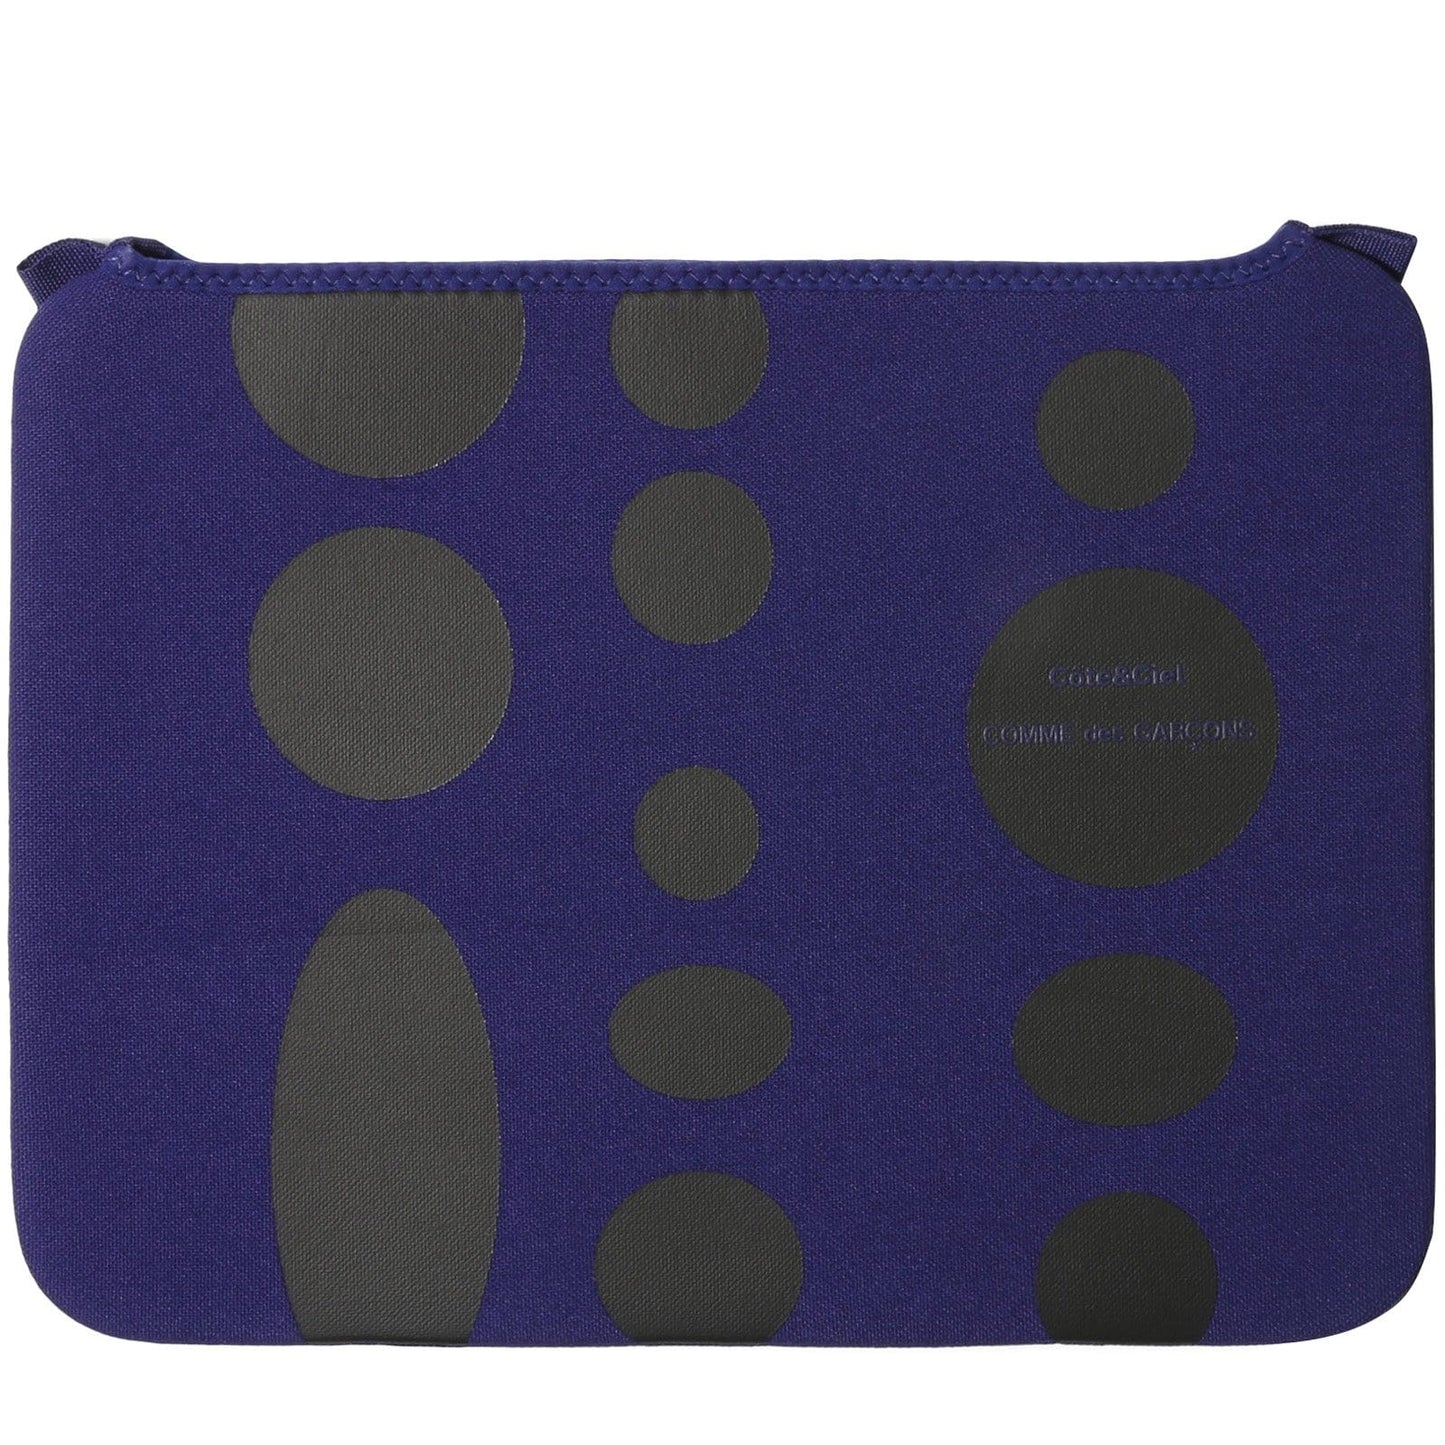 Comme Des Garçons Wallet Bags & Accessories BLUE / 15" x Cote & Ciel BLACK DOTS MACBOOK CASE 15"